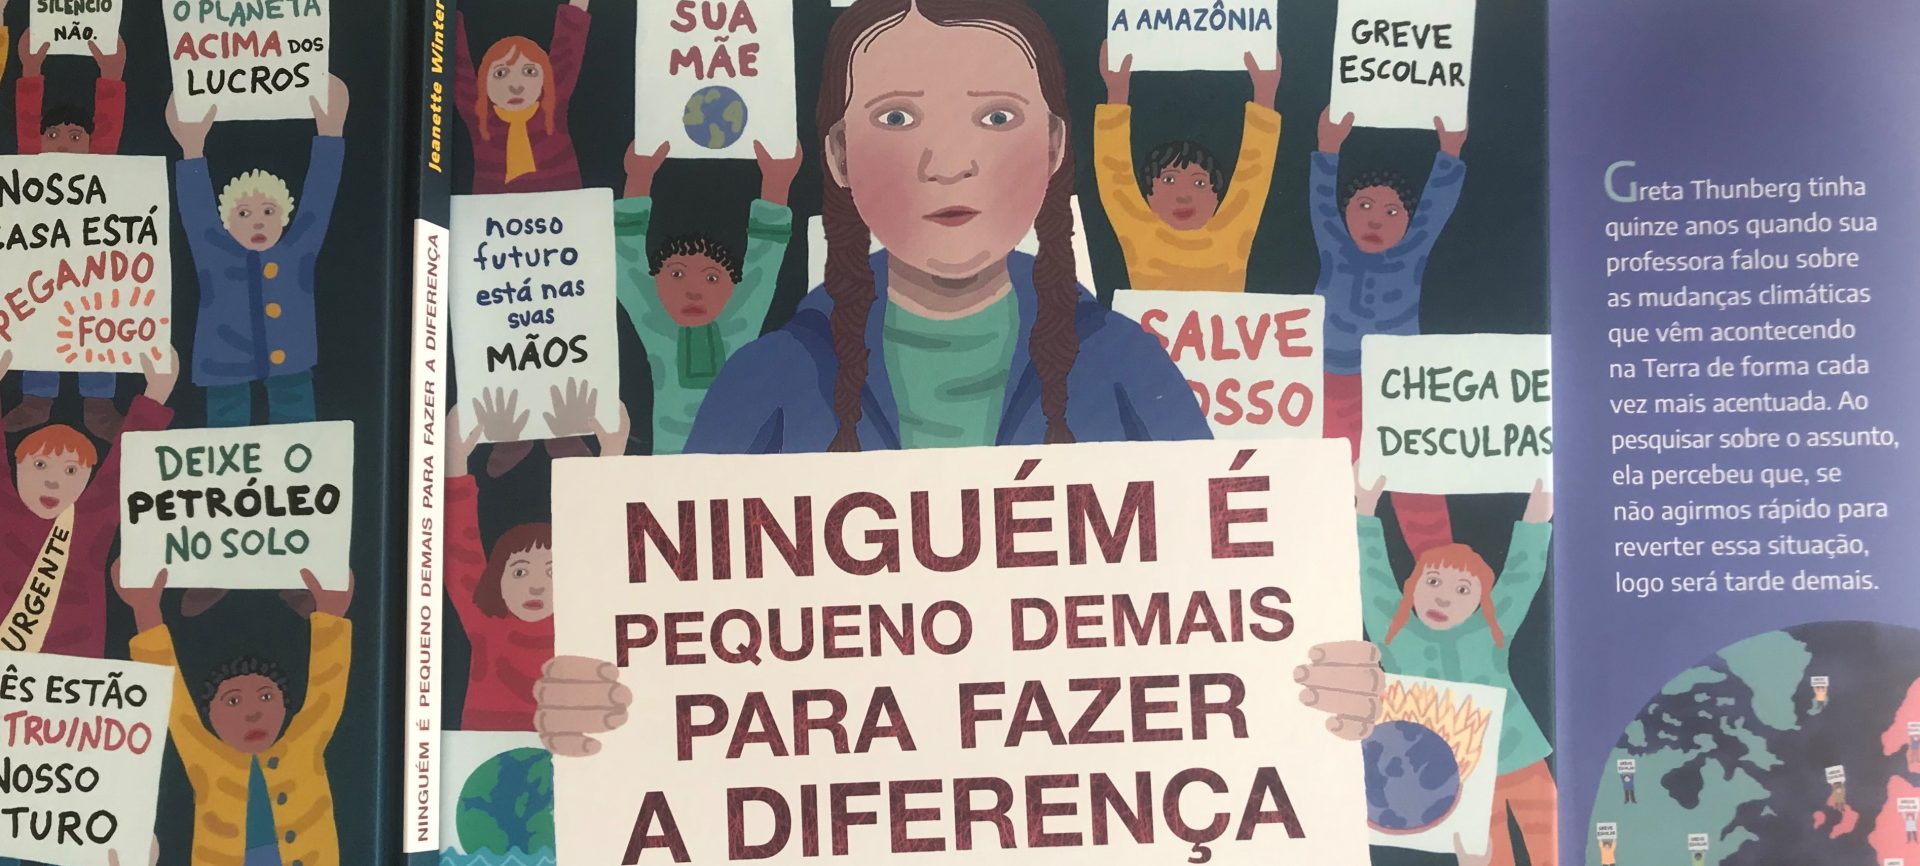 Imagem da capa do livro de Greta Thunberg,uma menina segurando uma placa com o nome do livro Ninguém é pequeno demais para fazer a diferença”.